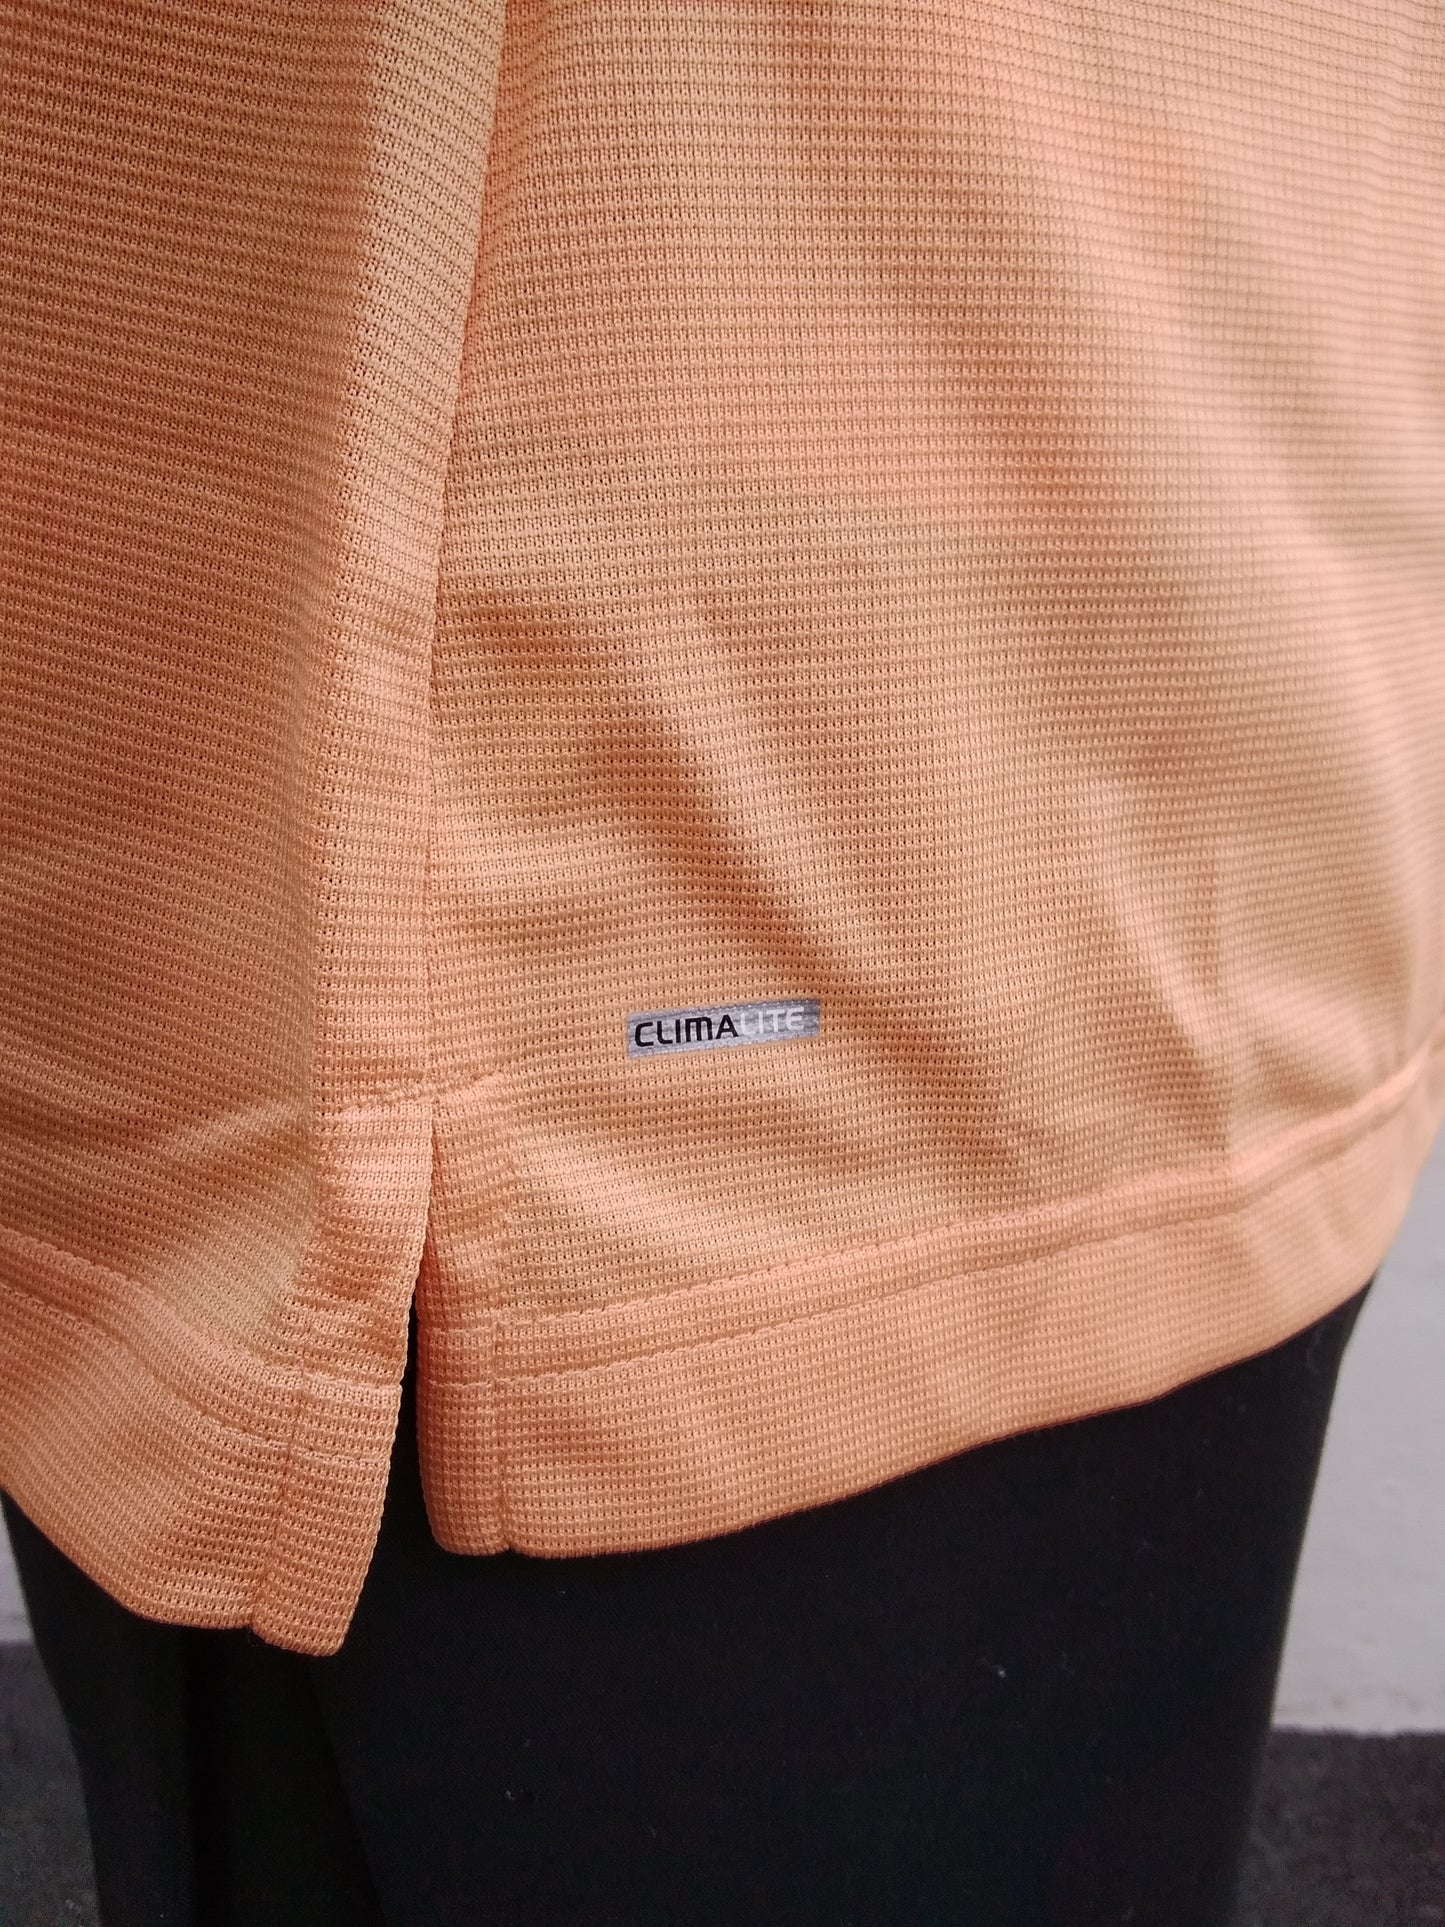 NWT - Adidas Golf peach Climalite Textured Solid Polo Shirt - M